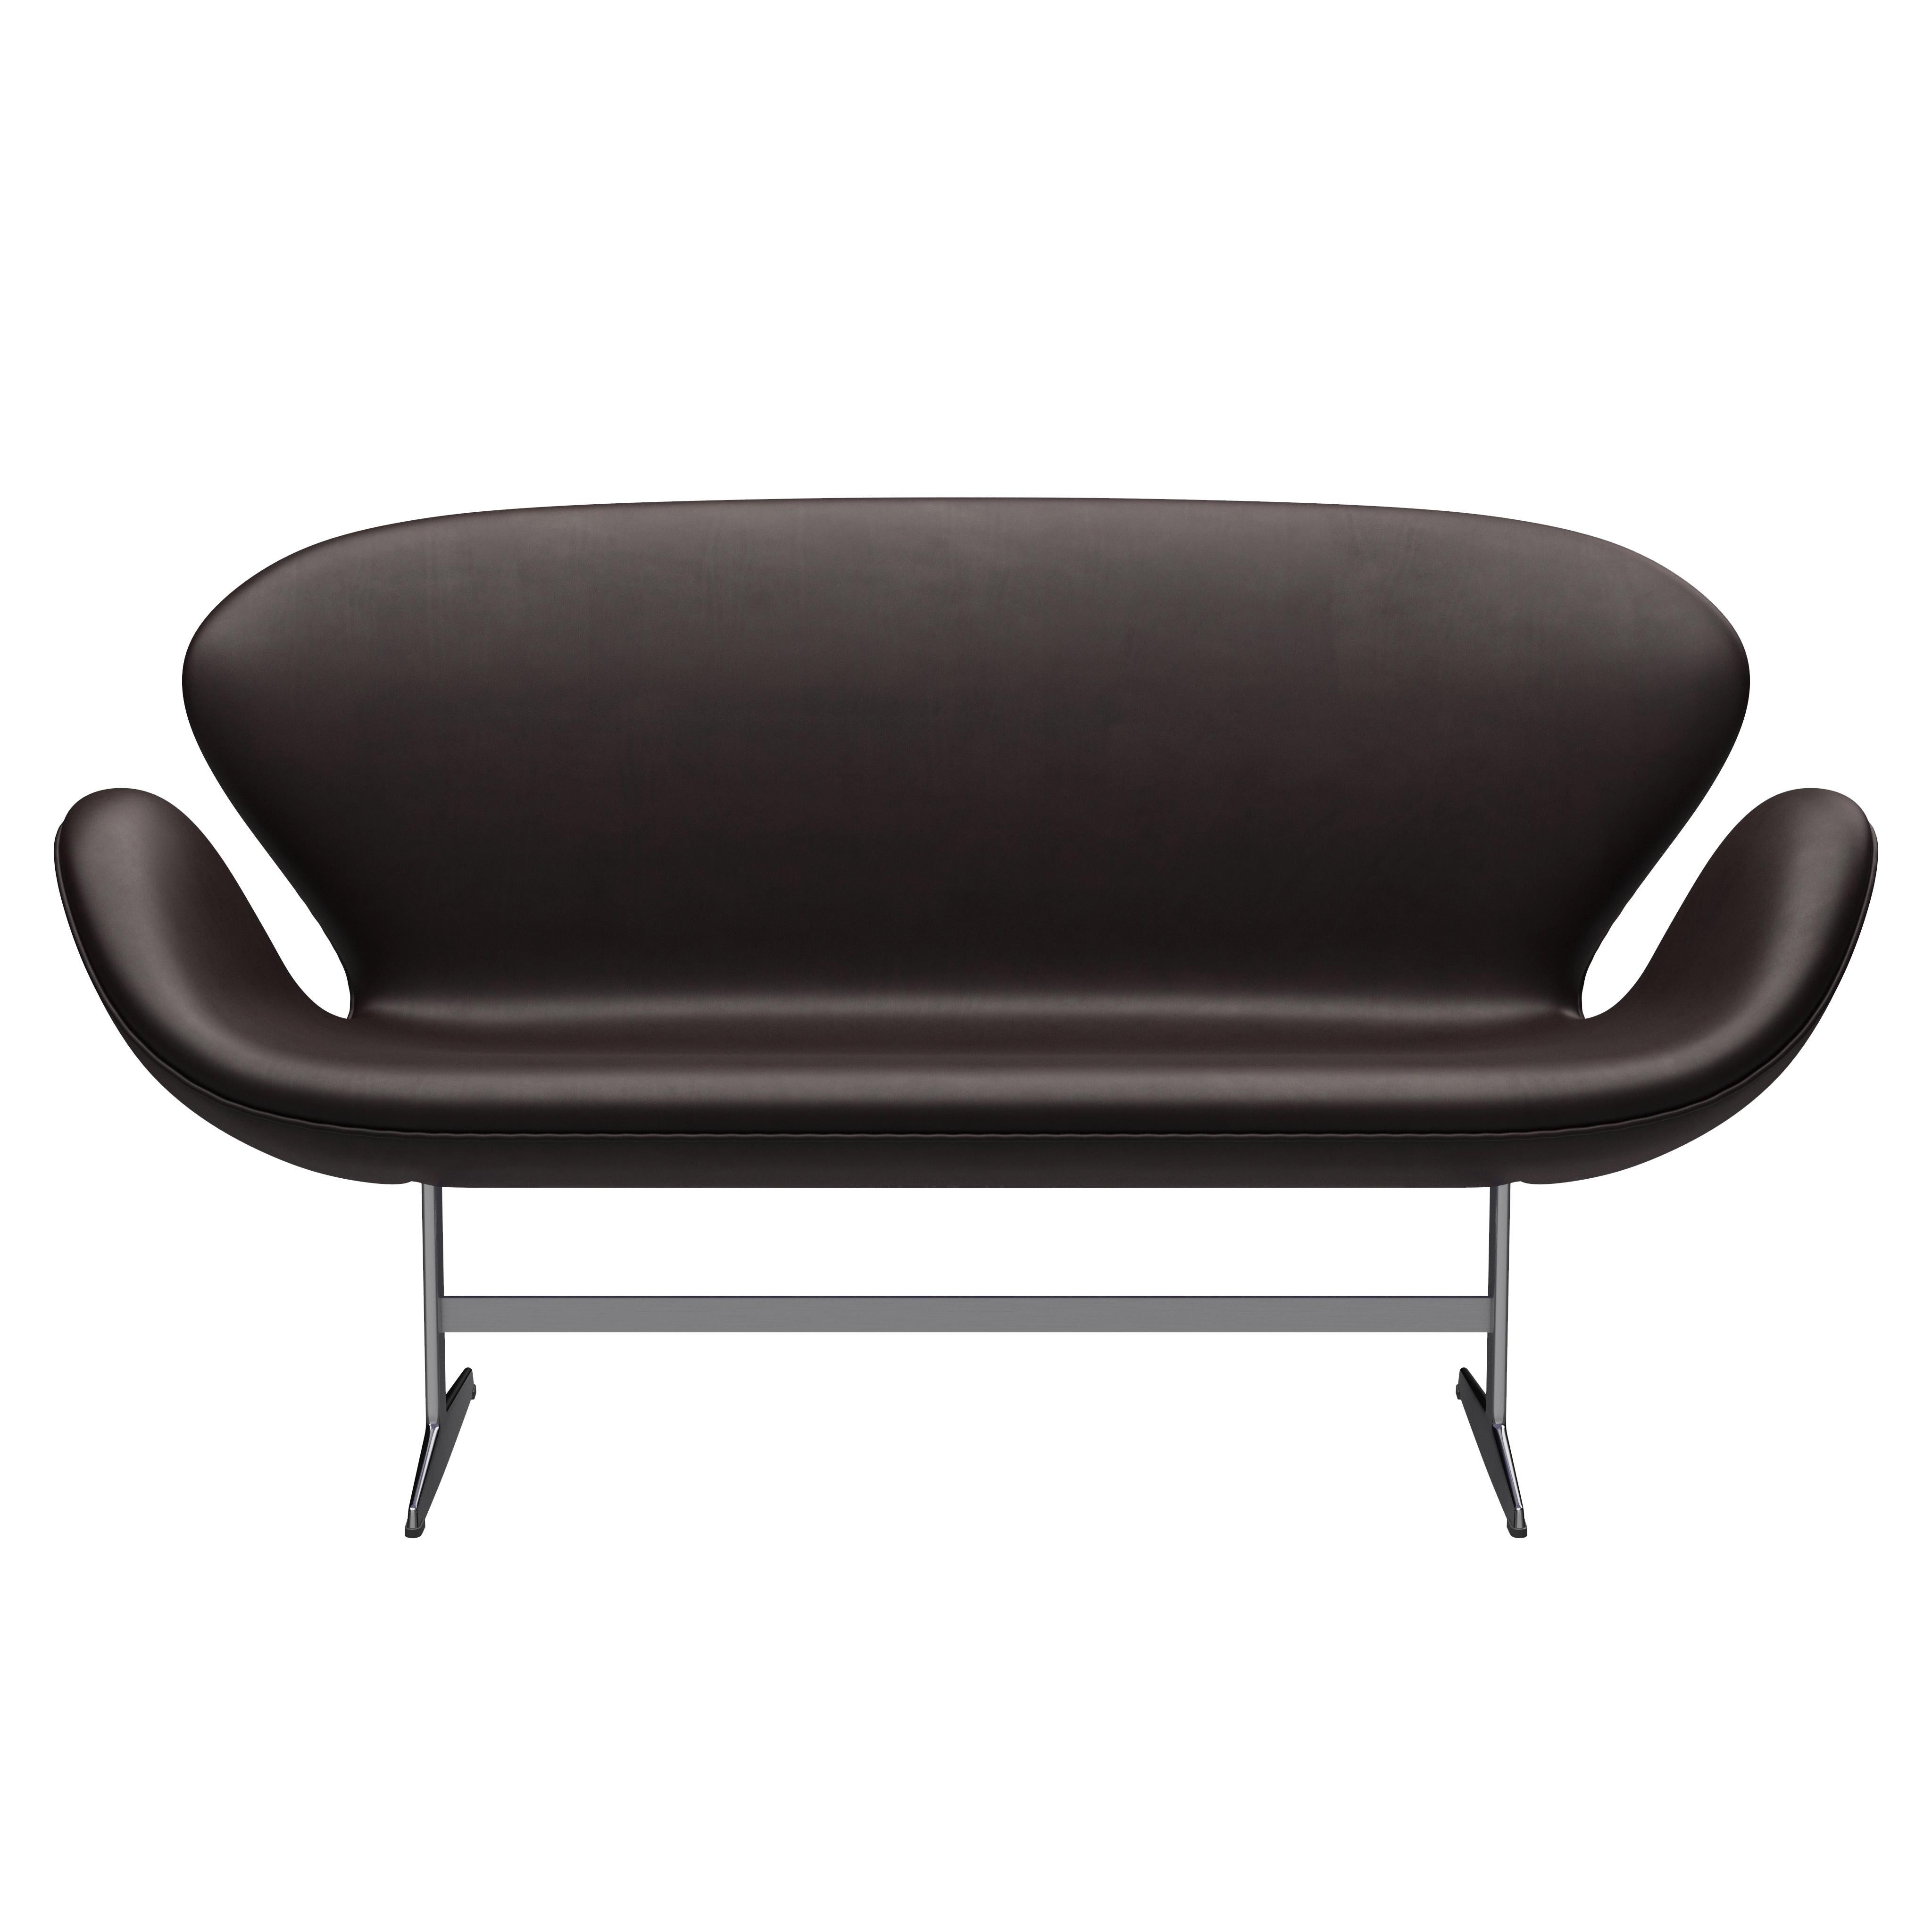 Arne Jacobsen 'Swan' Sofa for Fritz Hansen in Leather Upholstery (Cat. 5) For Sale 5